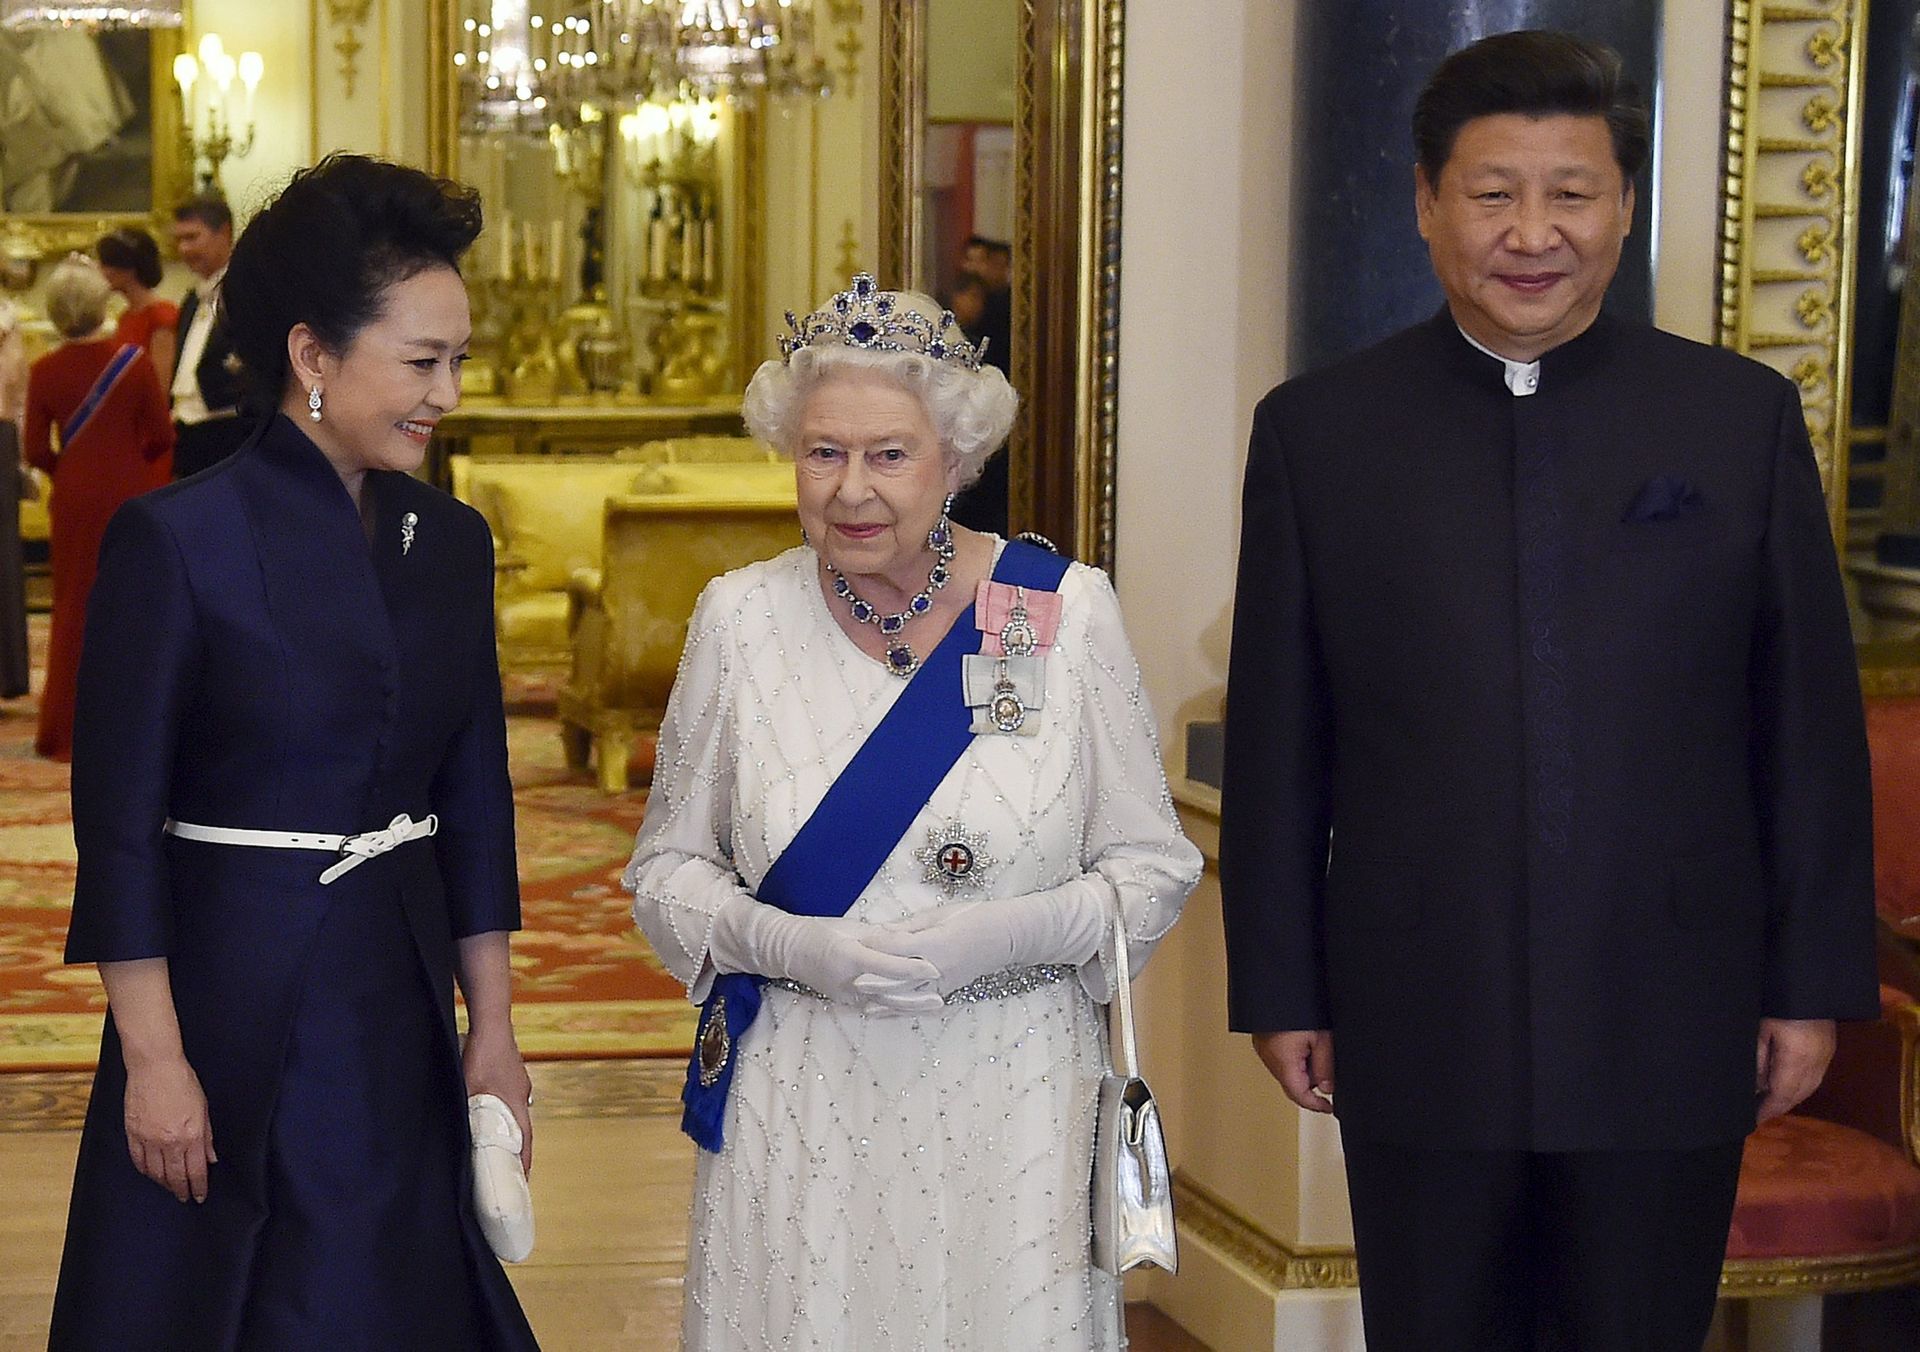 20 octobre 2015, Buckingham Palace, la reine Elizabeth II portant sa parure de saphirs et diamants, accompagnée de Xi Inping, président de la République populaire de Chine et de son épouse Peng Liyuan. 